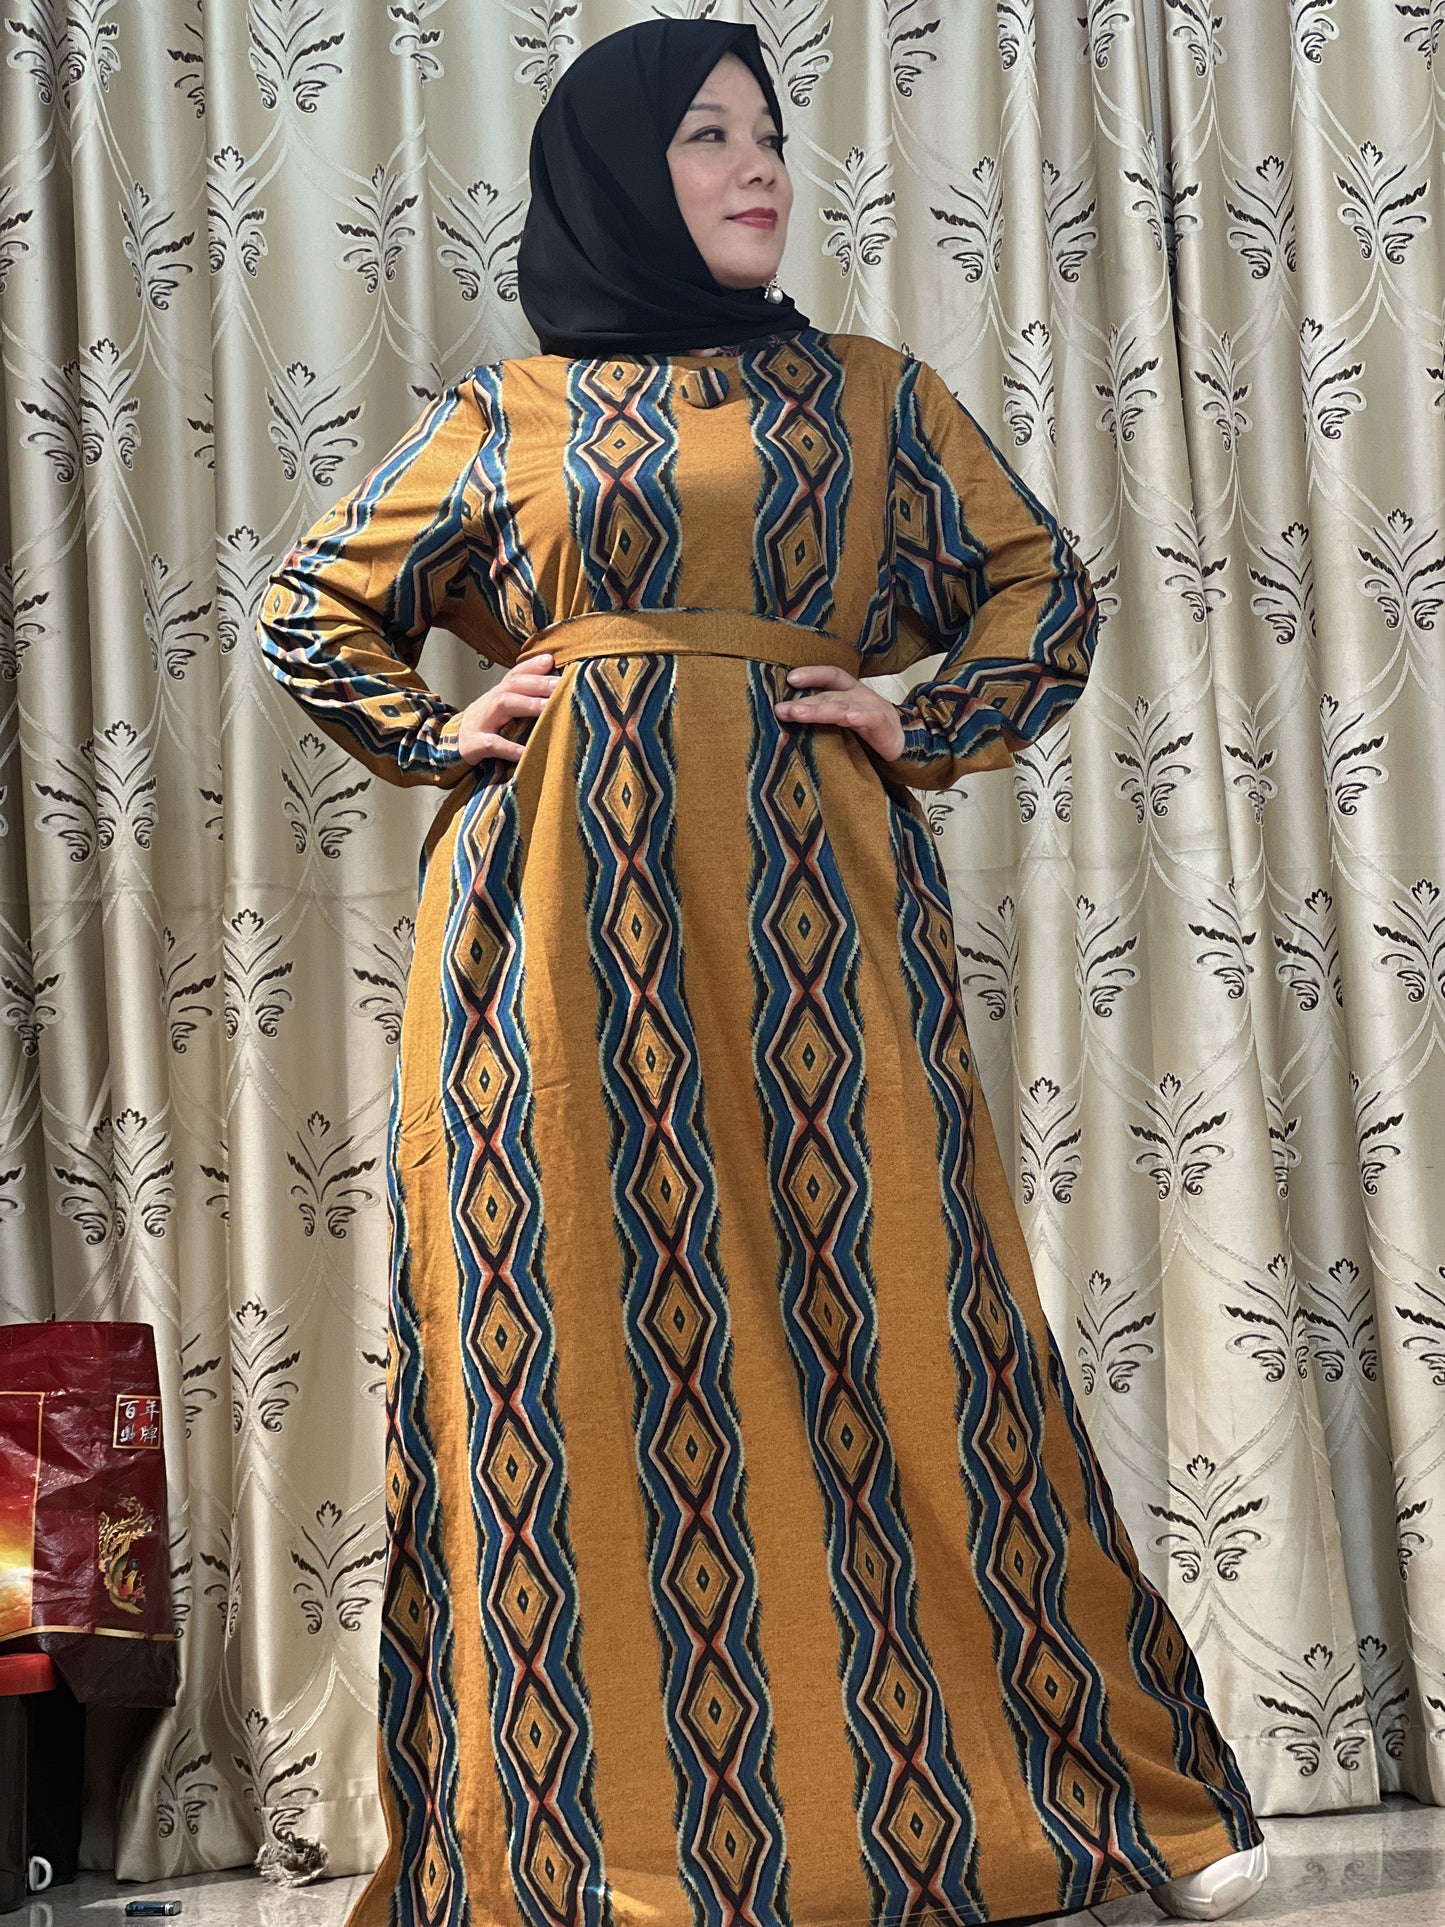 【H15-928】Muslim Women's winter spinning print long dress